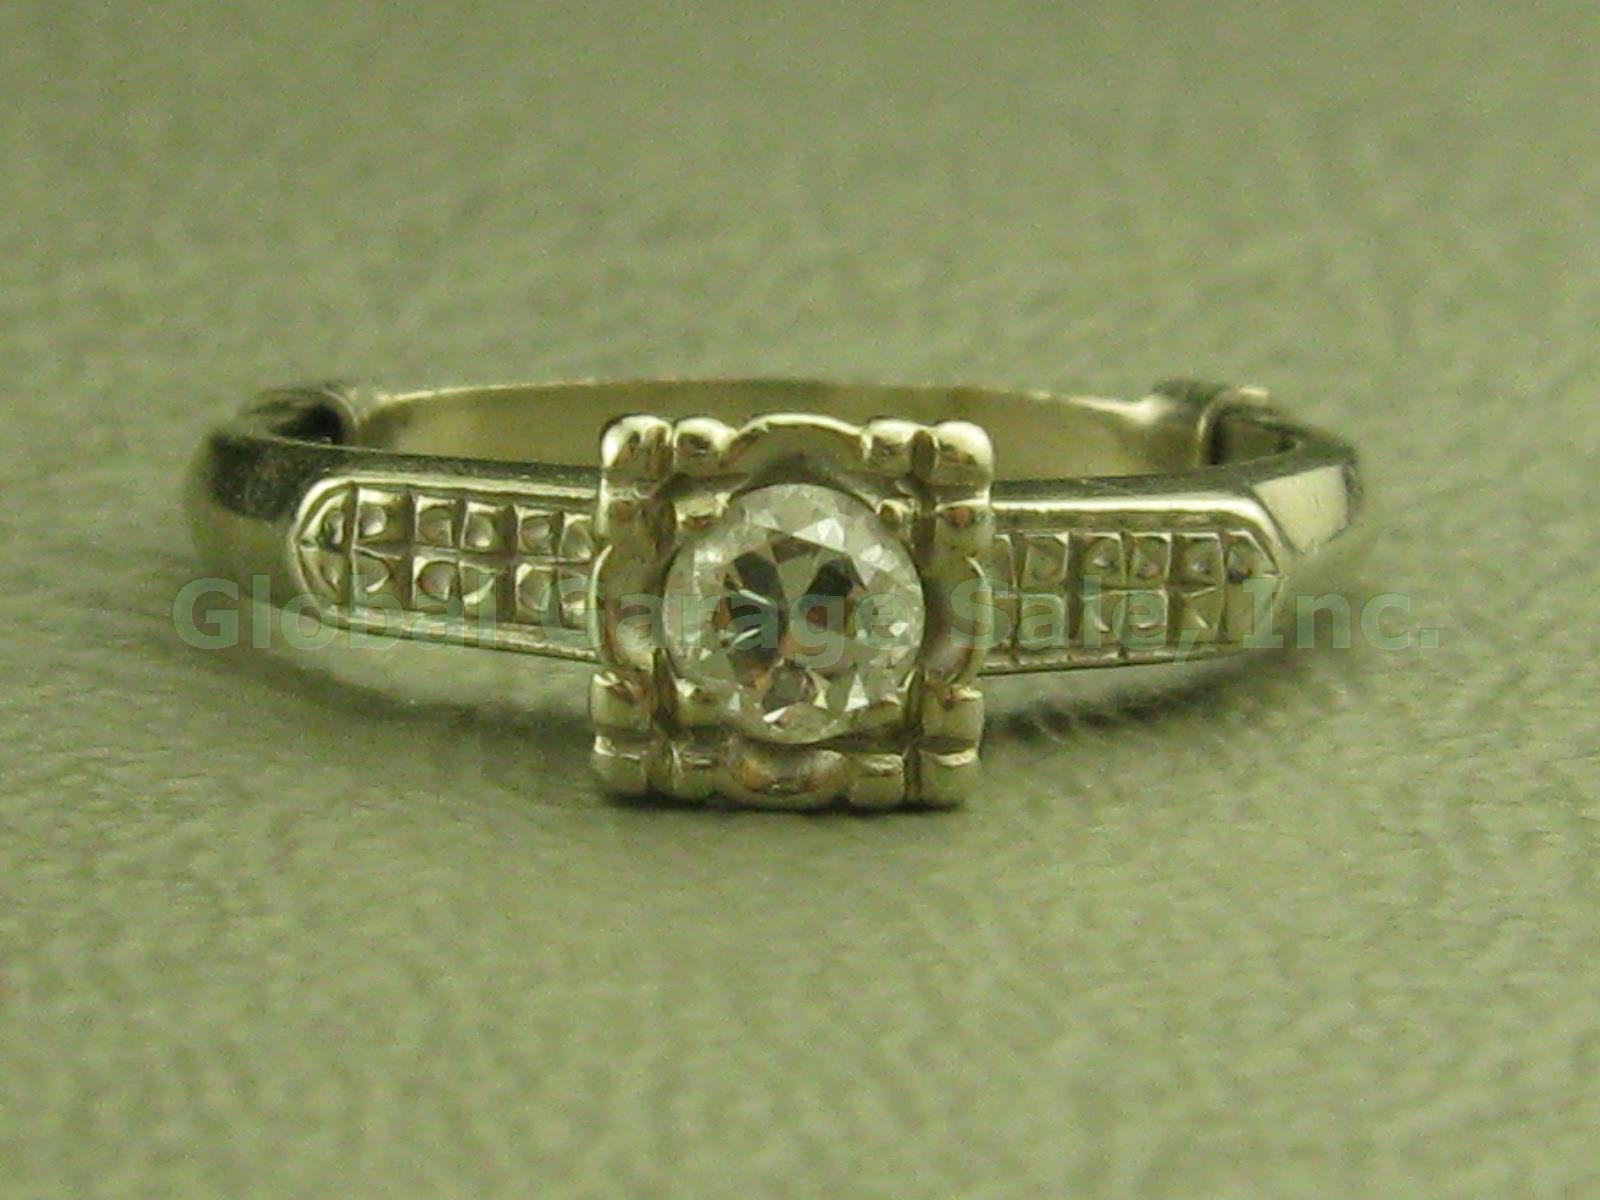 Vtg 14k White Gold Diamond Solitaire Engagement Ring Band W/Insert 4.25-4.5 2.9g 2